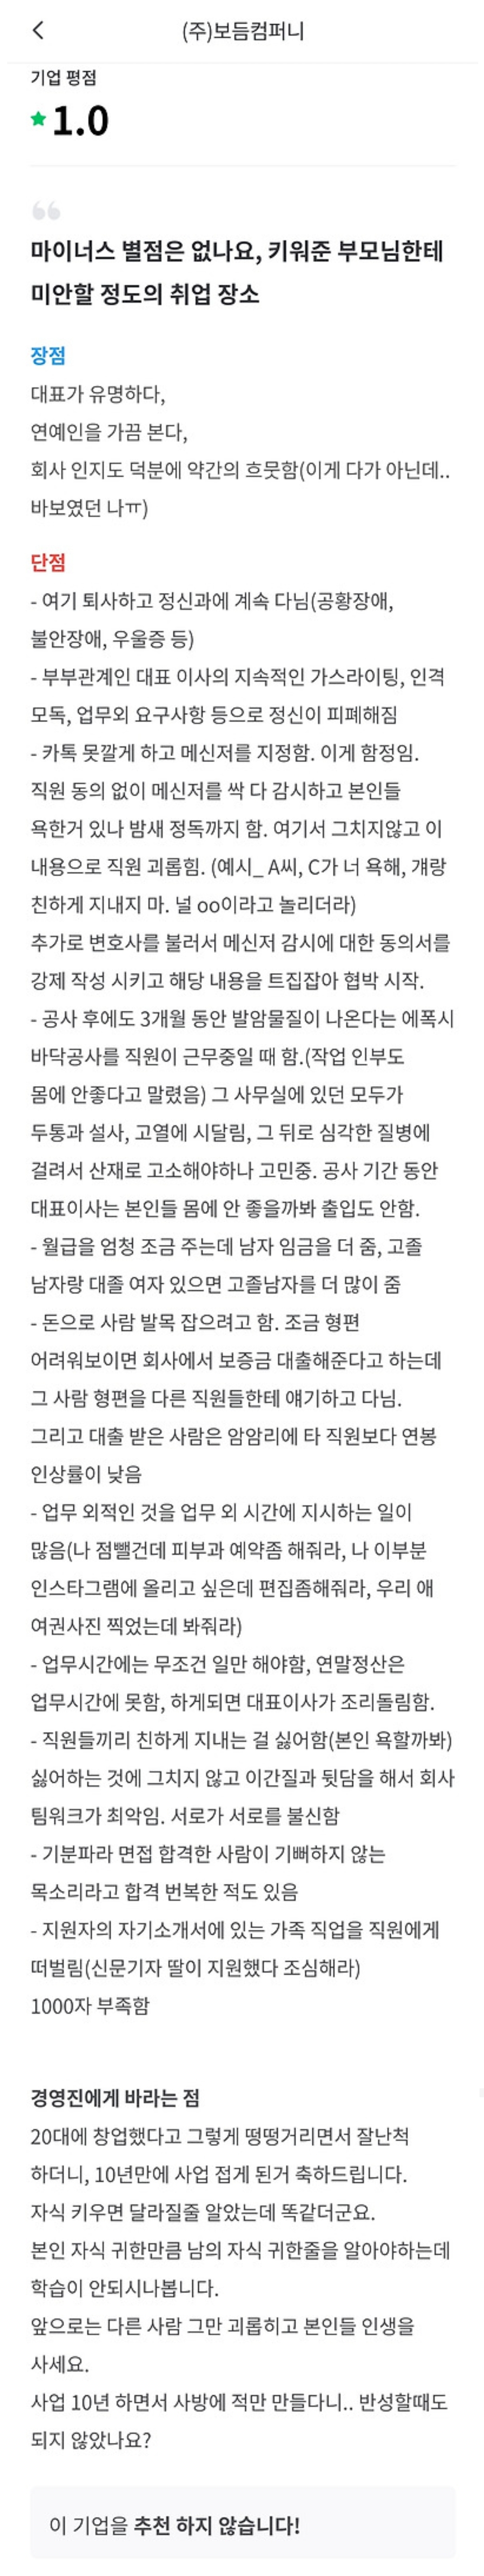 [마플] 강형욱이 대표로 있는 보듬컴퍼니 잡플래닛 평점 | 인스티즈